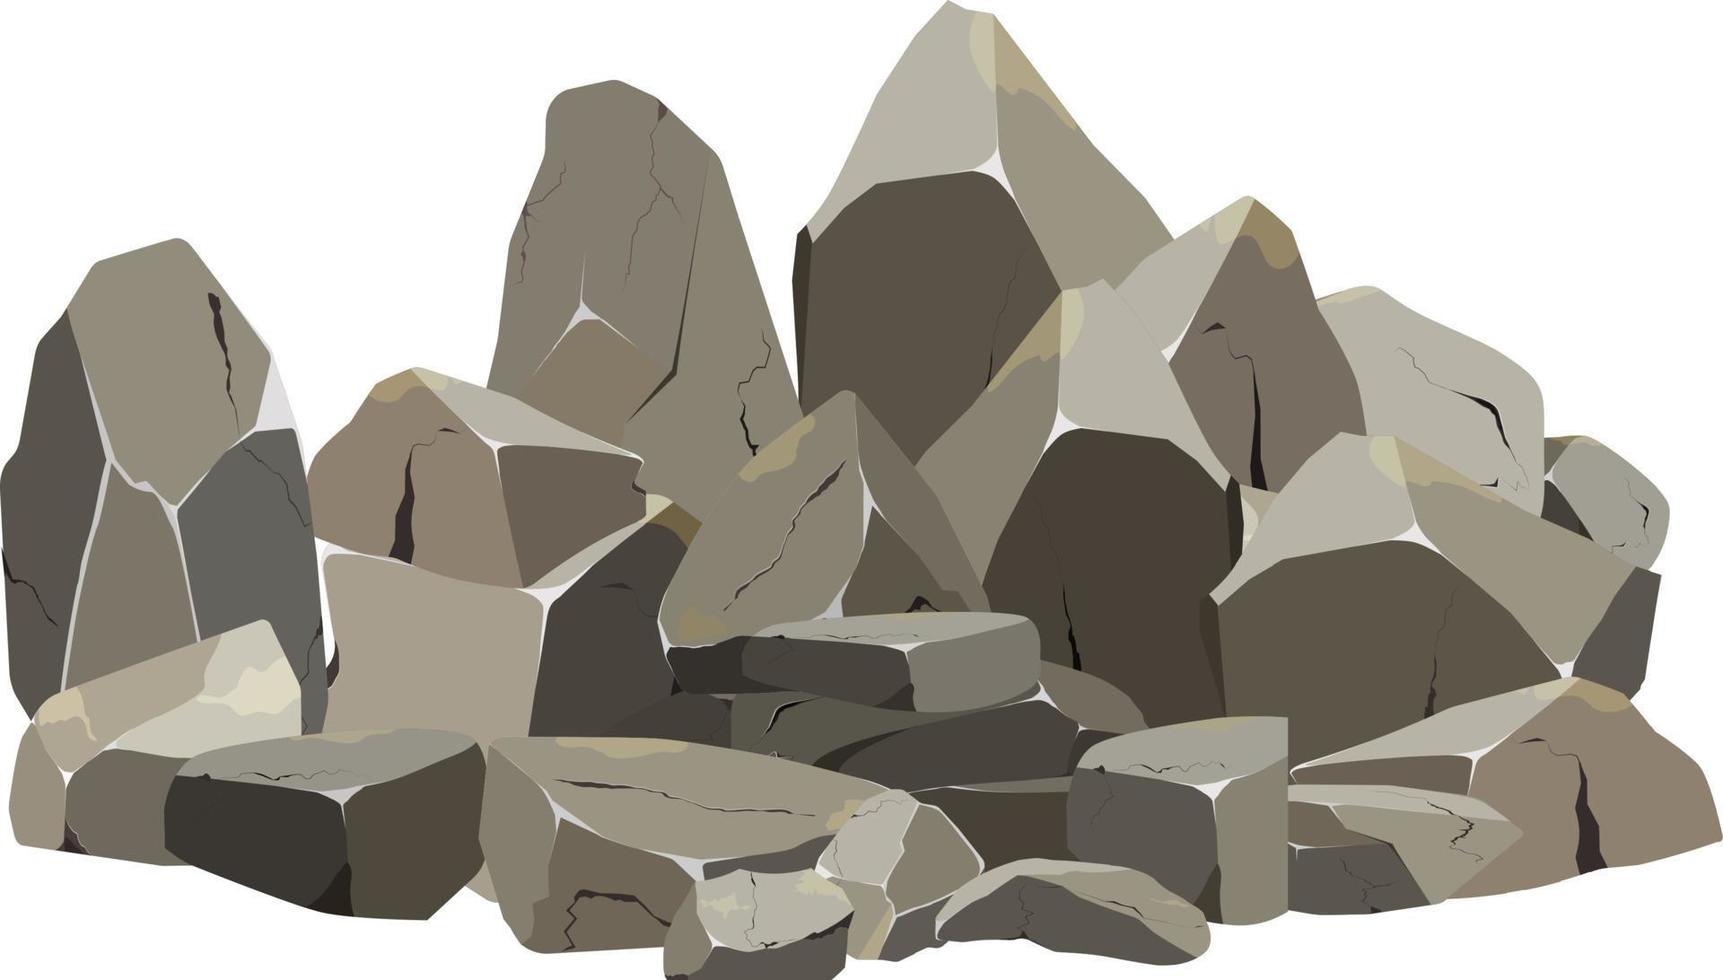 colección de piedras de varias formas y arbustos. guijarros costeros, adoquines, grava, minerales y formaciones geológicas. fragmentos de roca, cantos rodados y material de construcción. vector